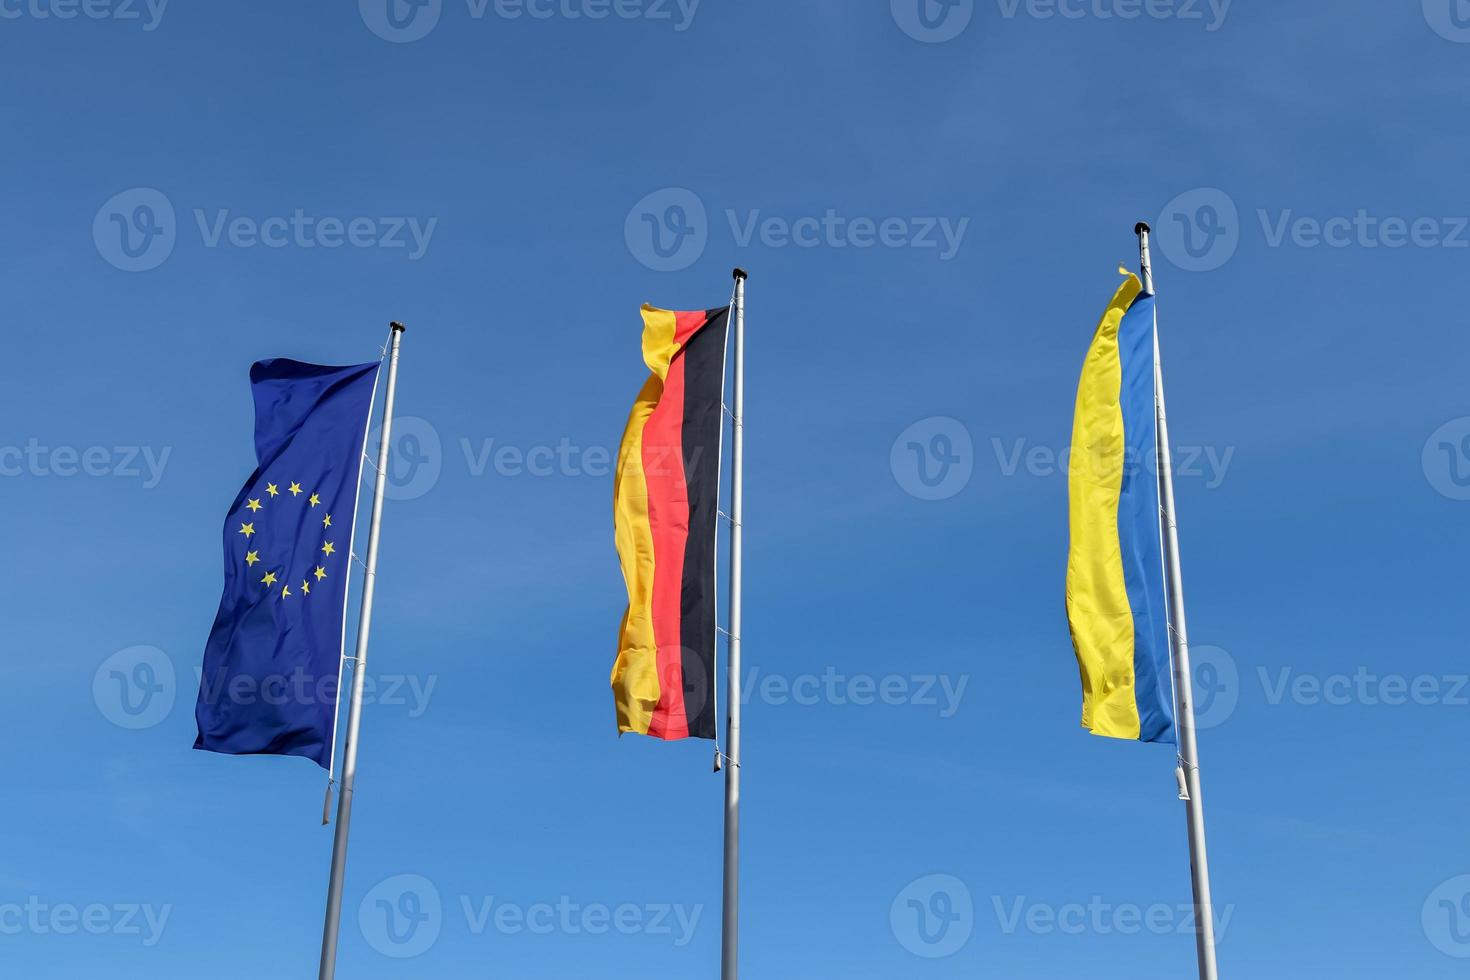 les drapeaux de l'ukraine, de l'allemagne et de l'union européenne volent côte à côte contre le ciel bleu. photo